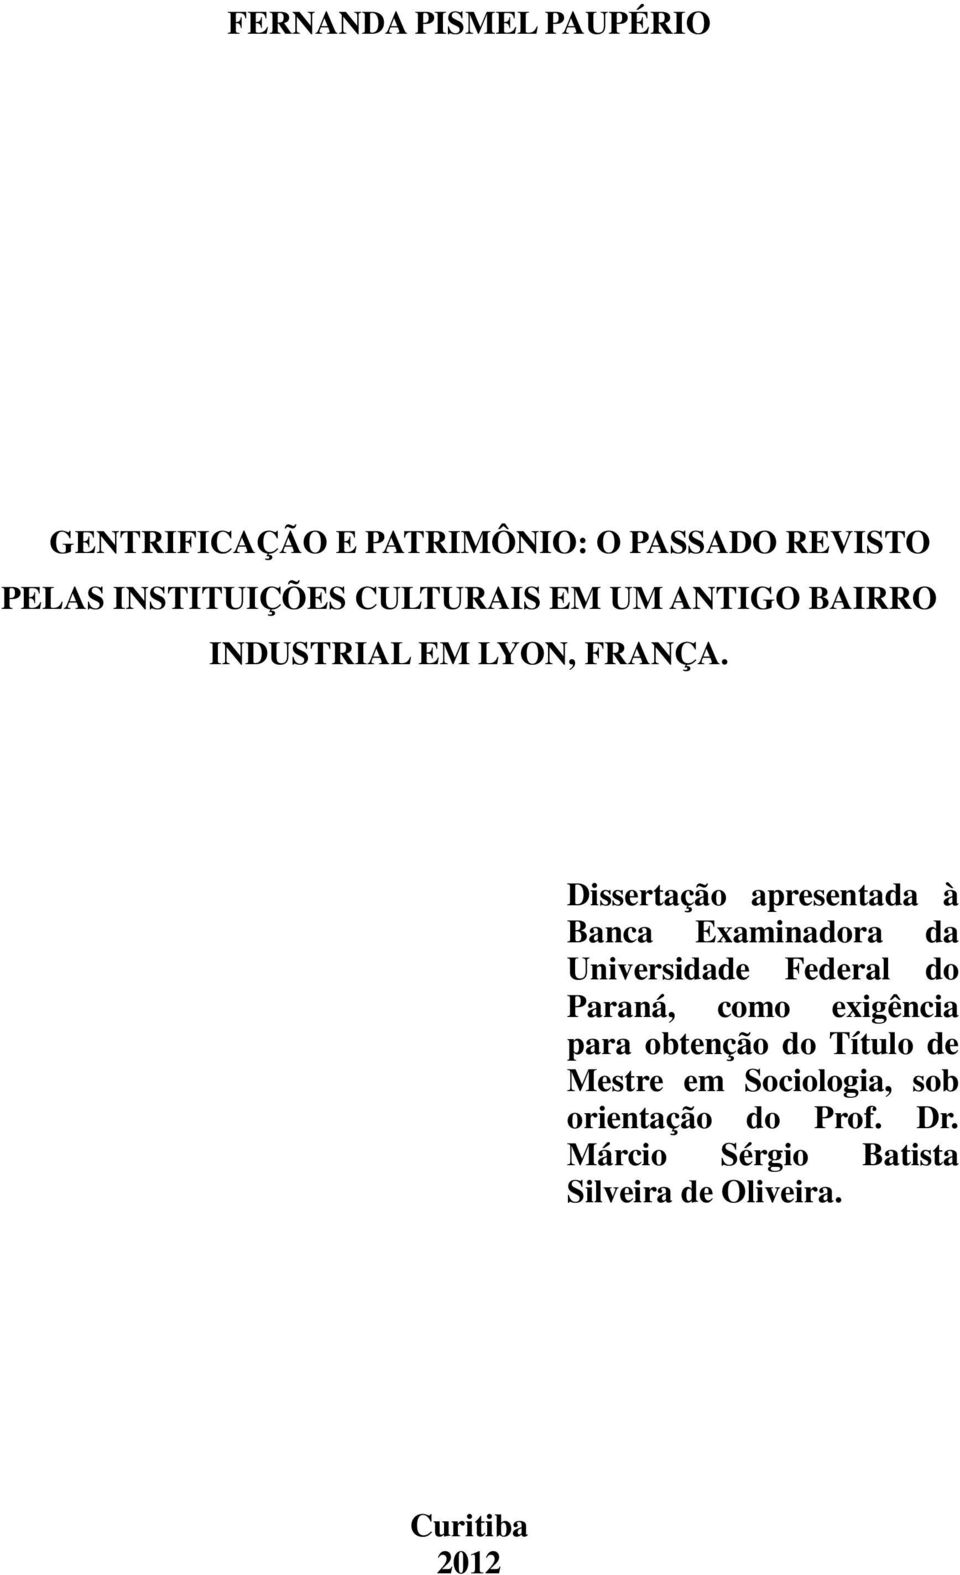 Dissertação apresentada à Banca Examinadora da Universidade Federal do Paraná, como exigência